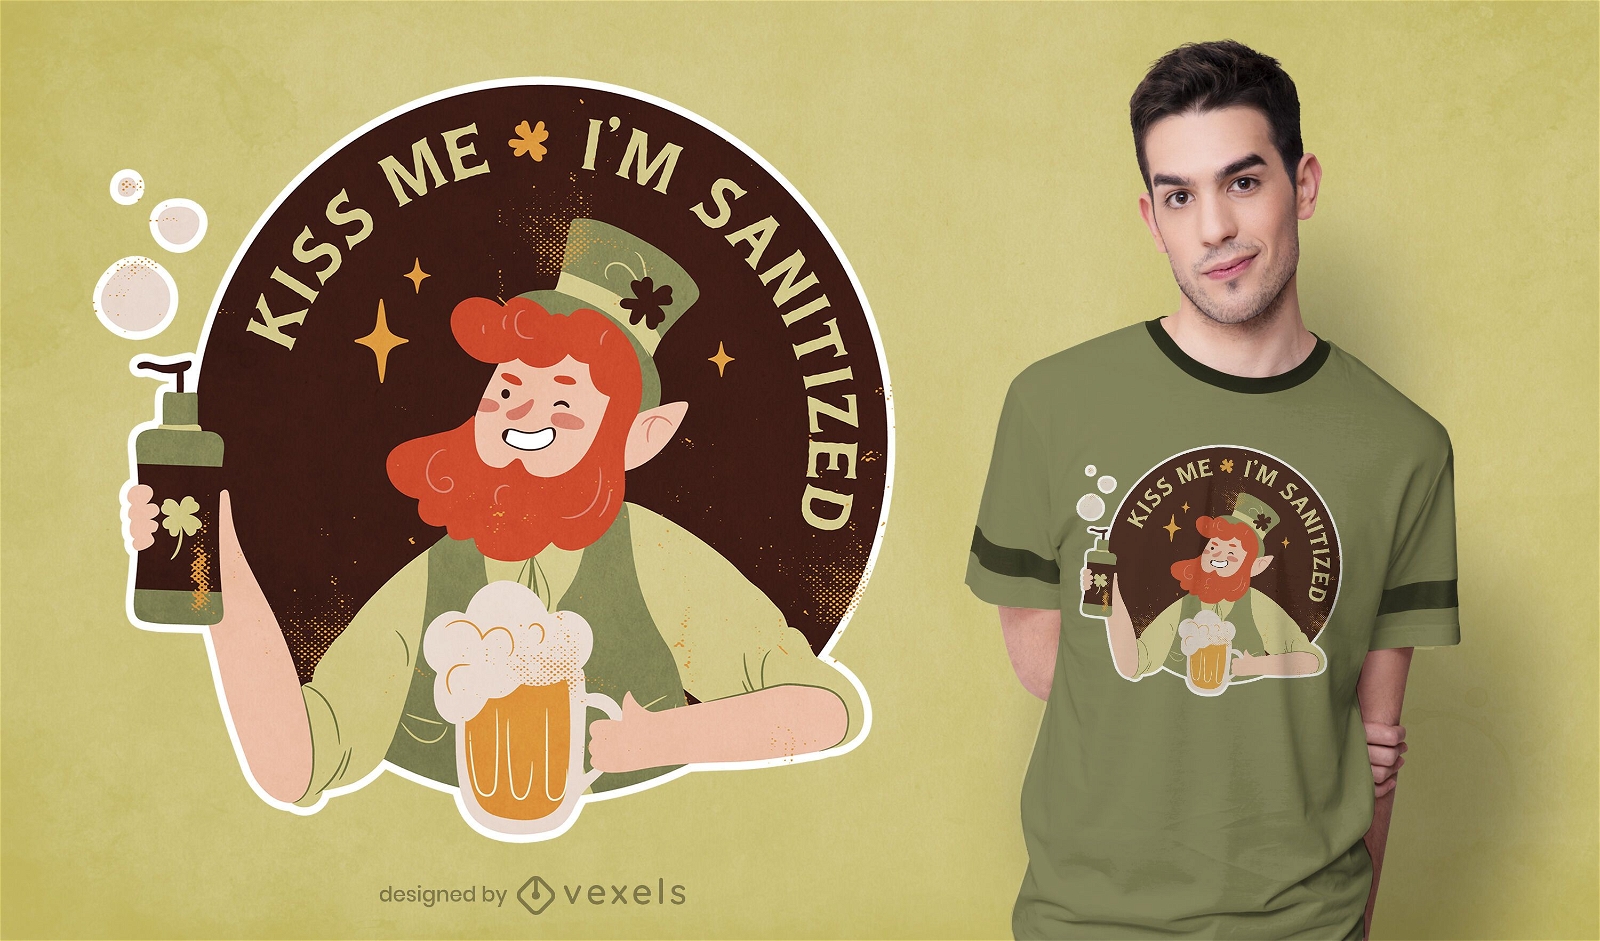 Kiss me i'm sanitized t-shirt design